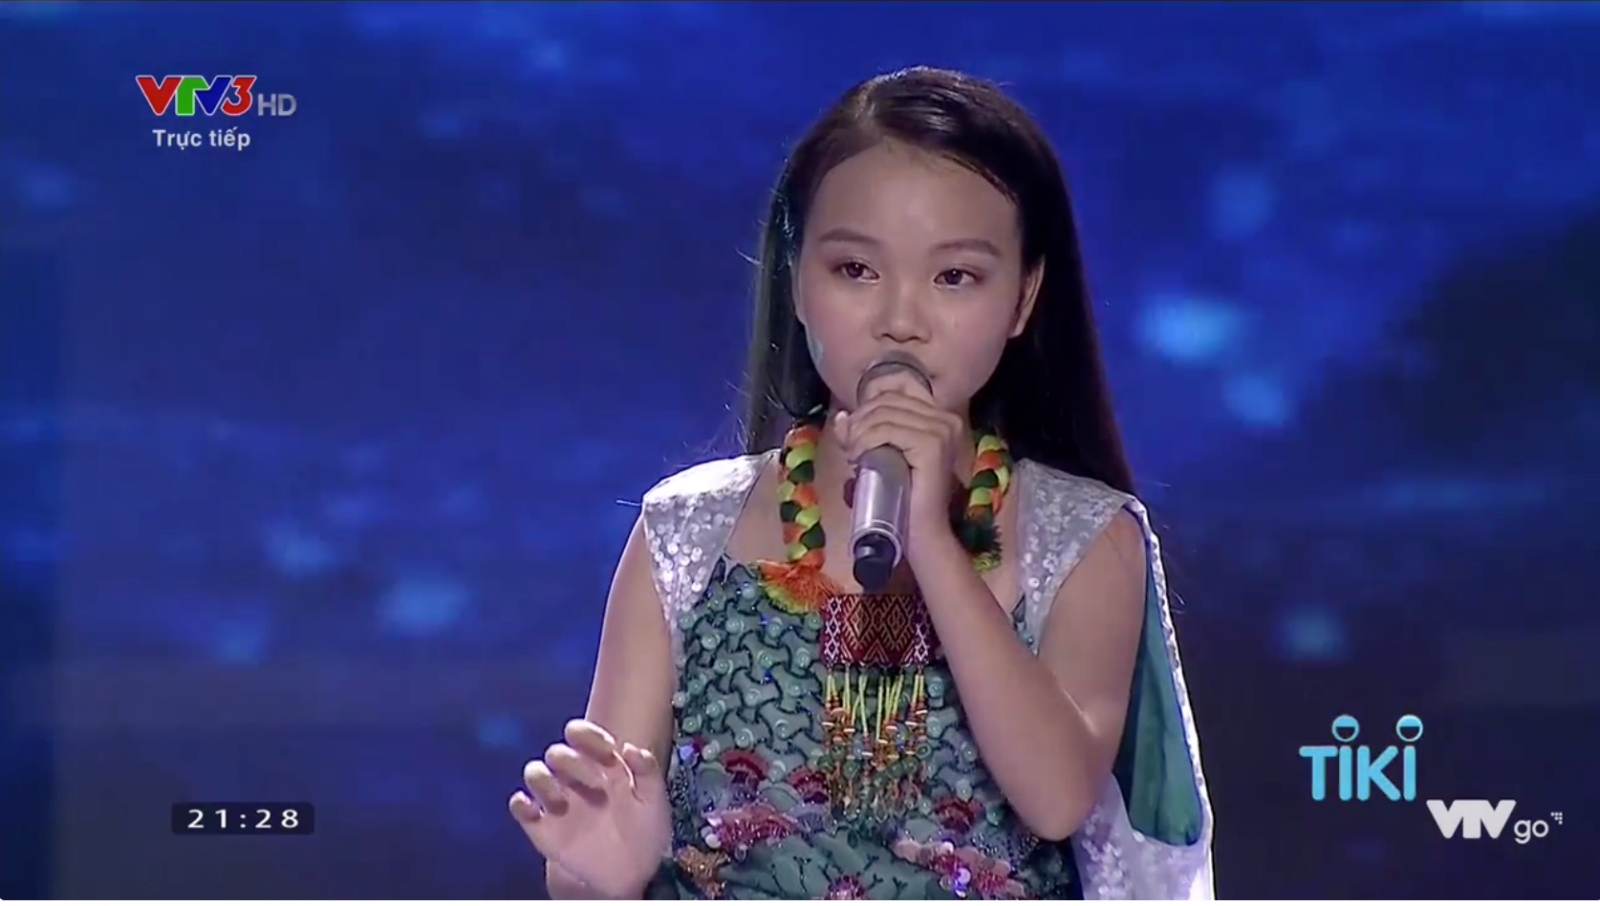 Hà Quỳnh Như là thí sinh chiến thắng trong đêm chung kết.